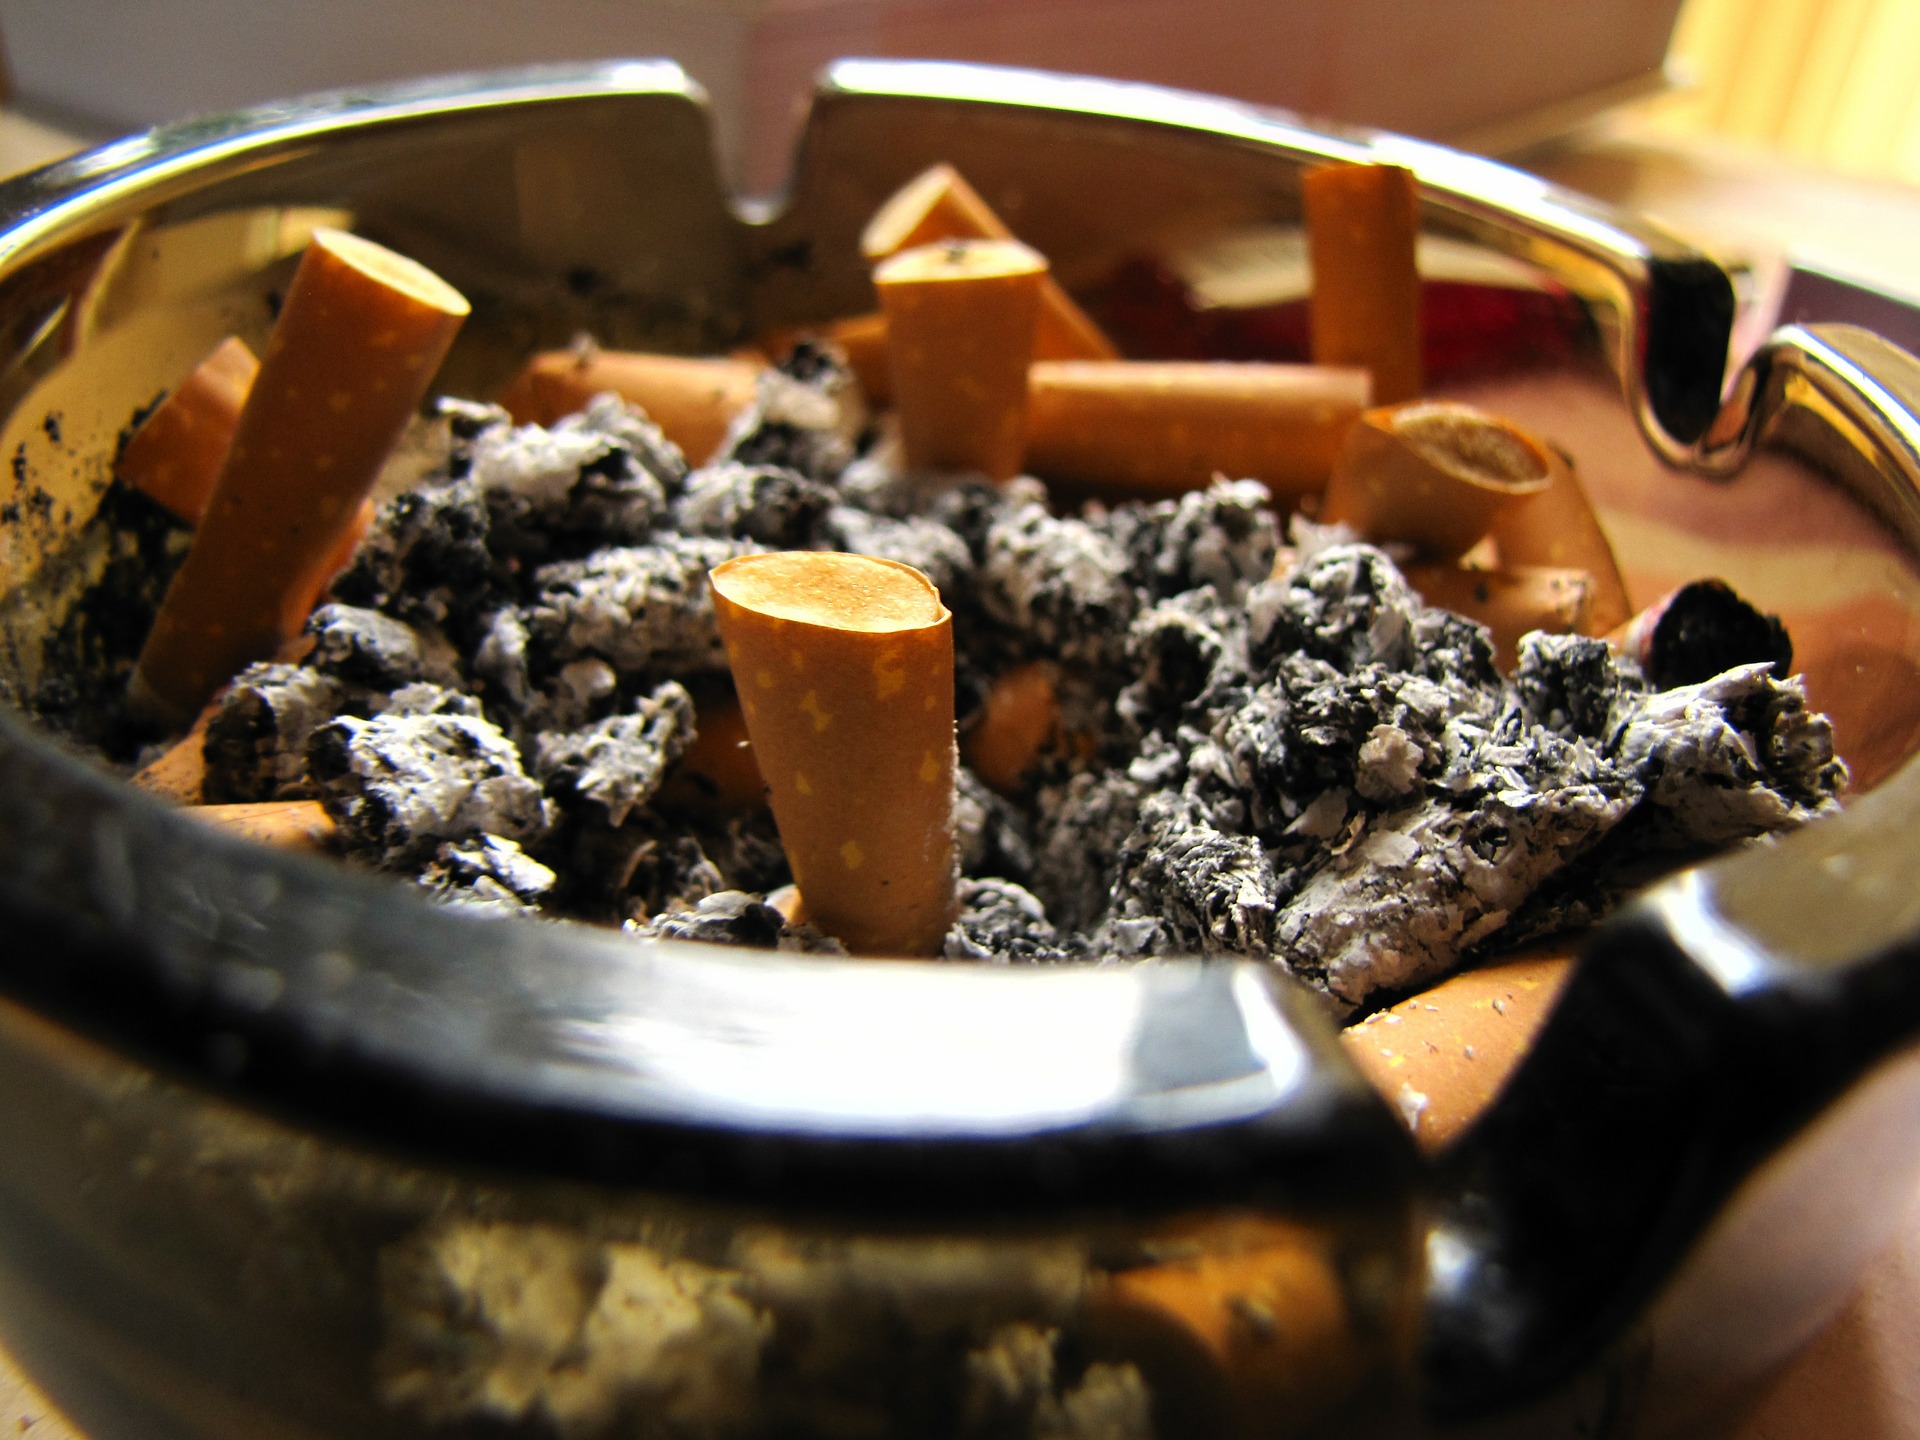 ashtray-169399_1920.jpg